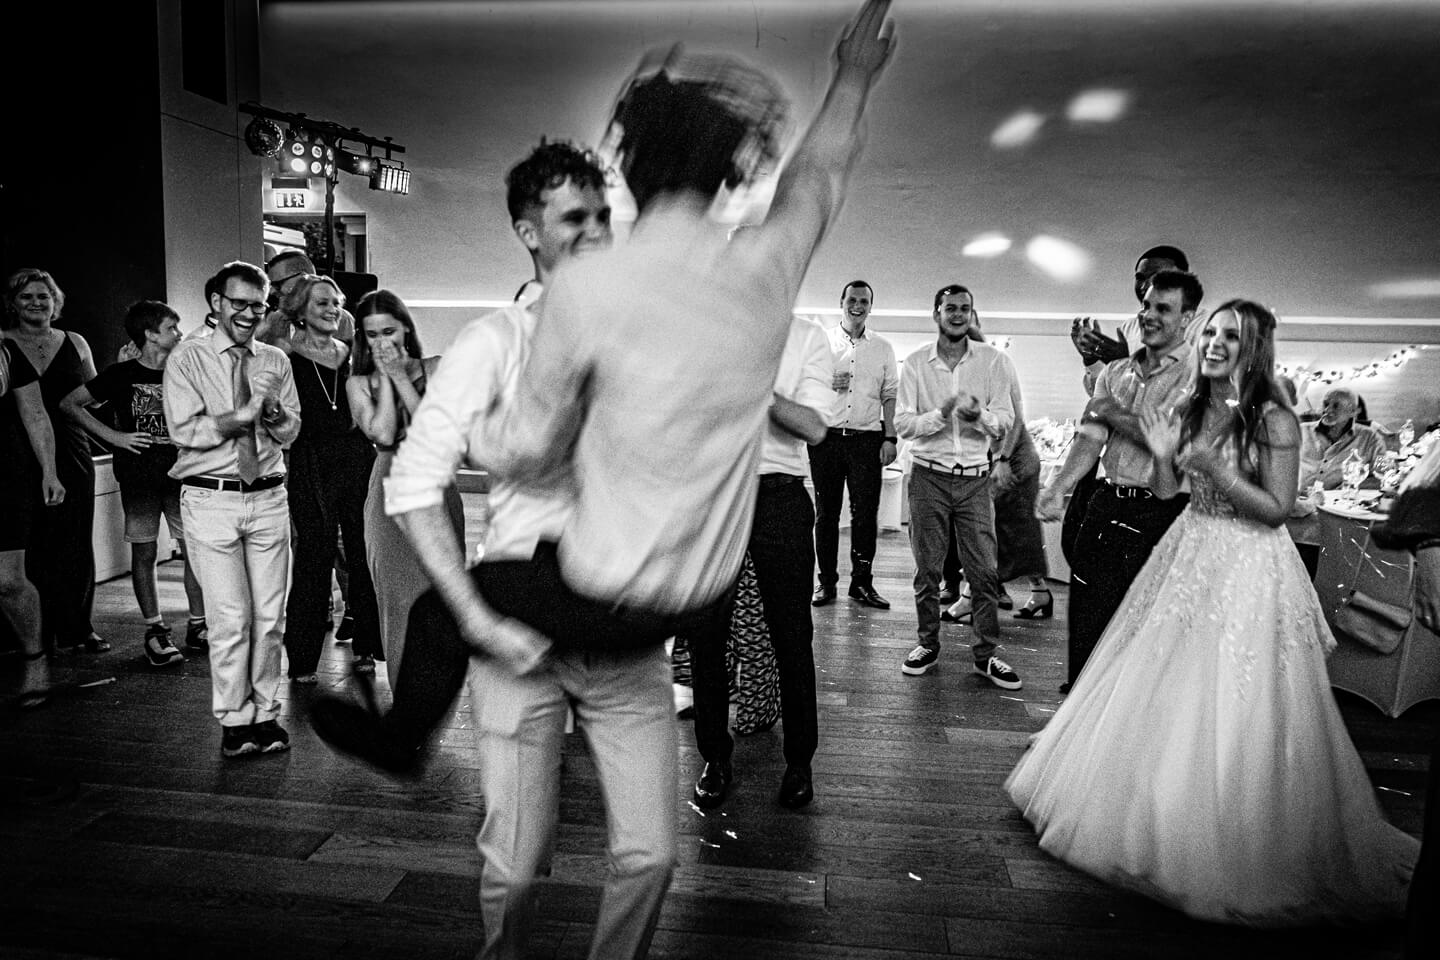 Hochzeitsparty ausgelassene Stimmung auf der Tanzfläche.